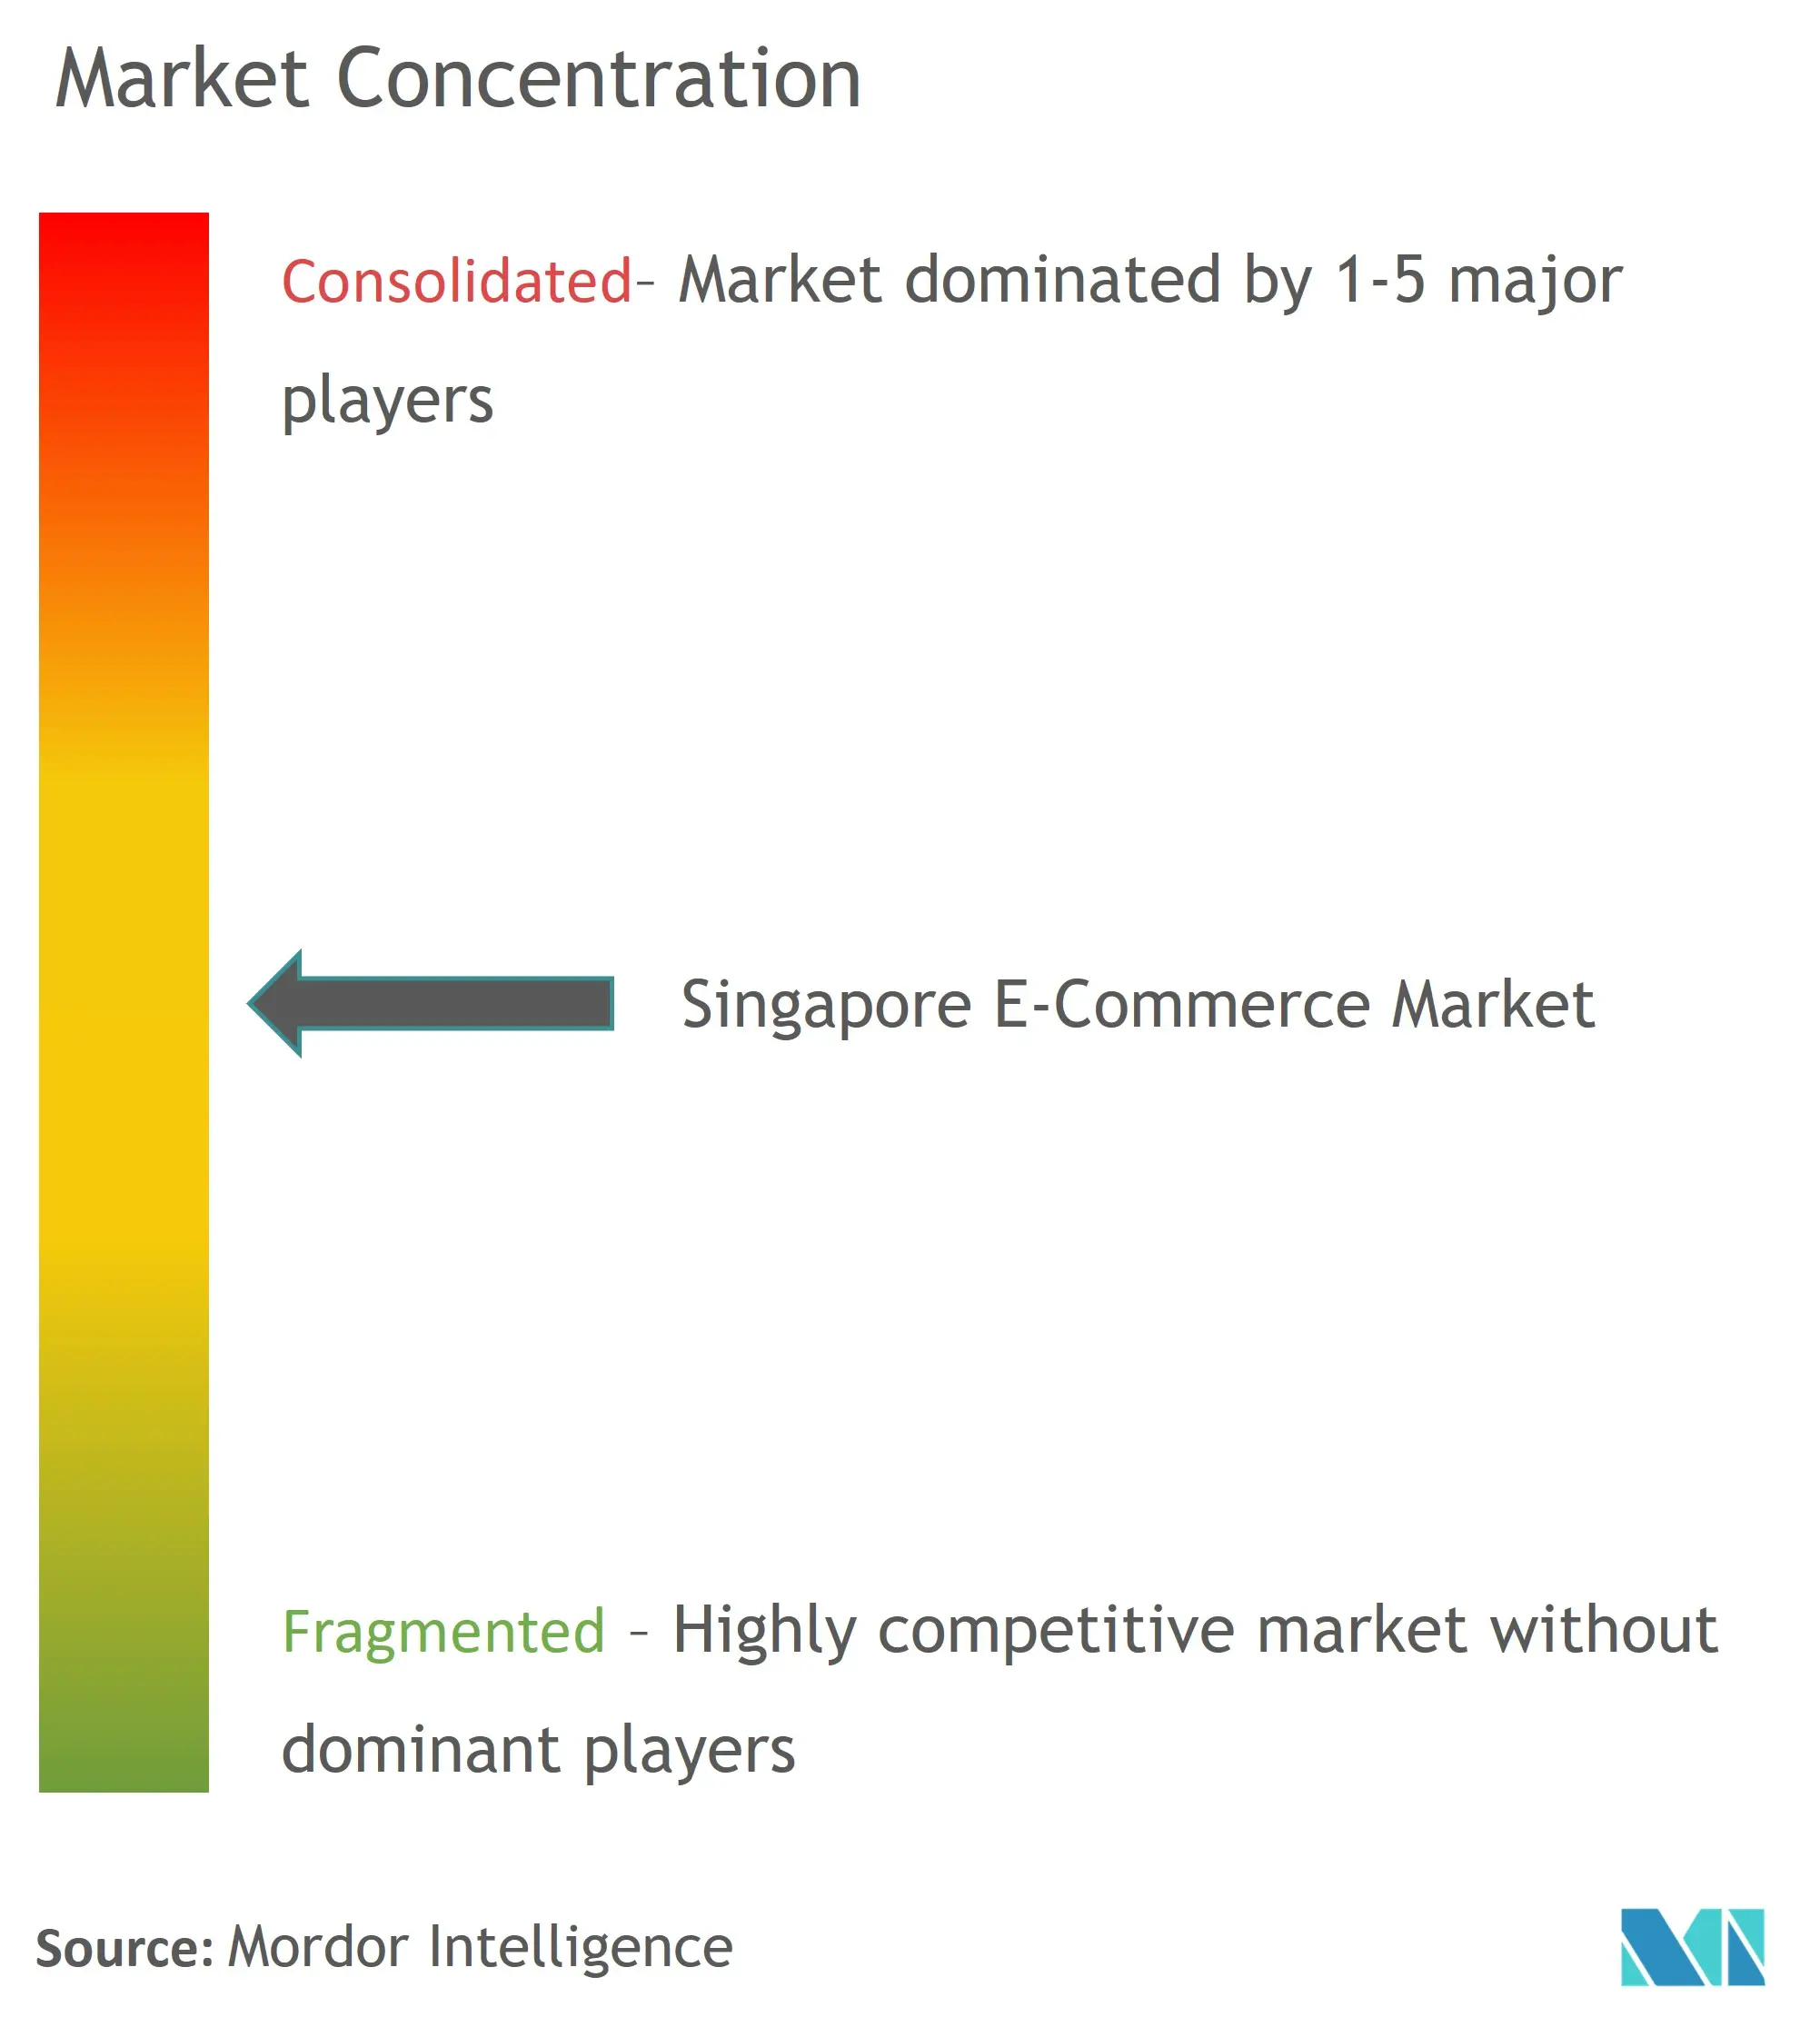 Singapore E-Commerce Market Concentration